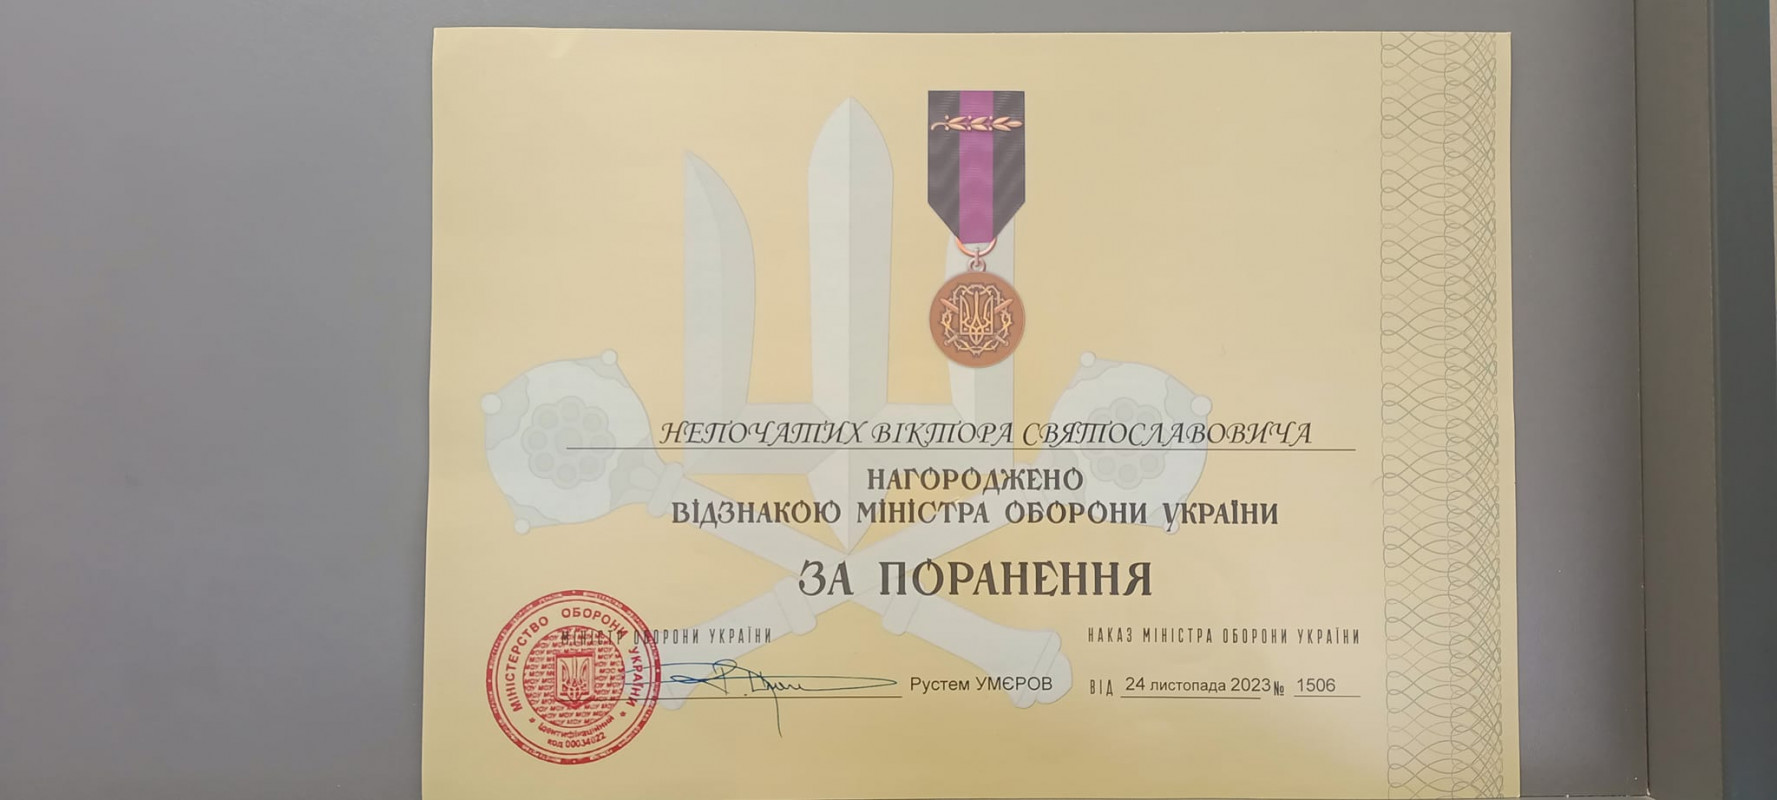 Захисника з Волині нагородили відзнакою Міністерства оборони України «За поранення»